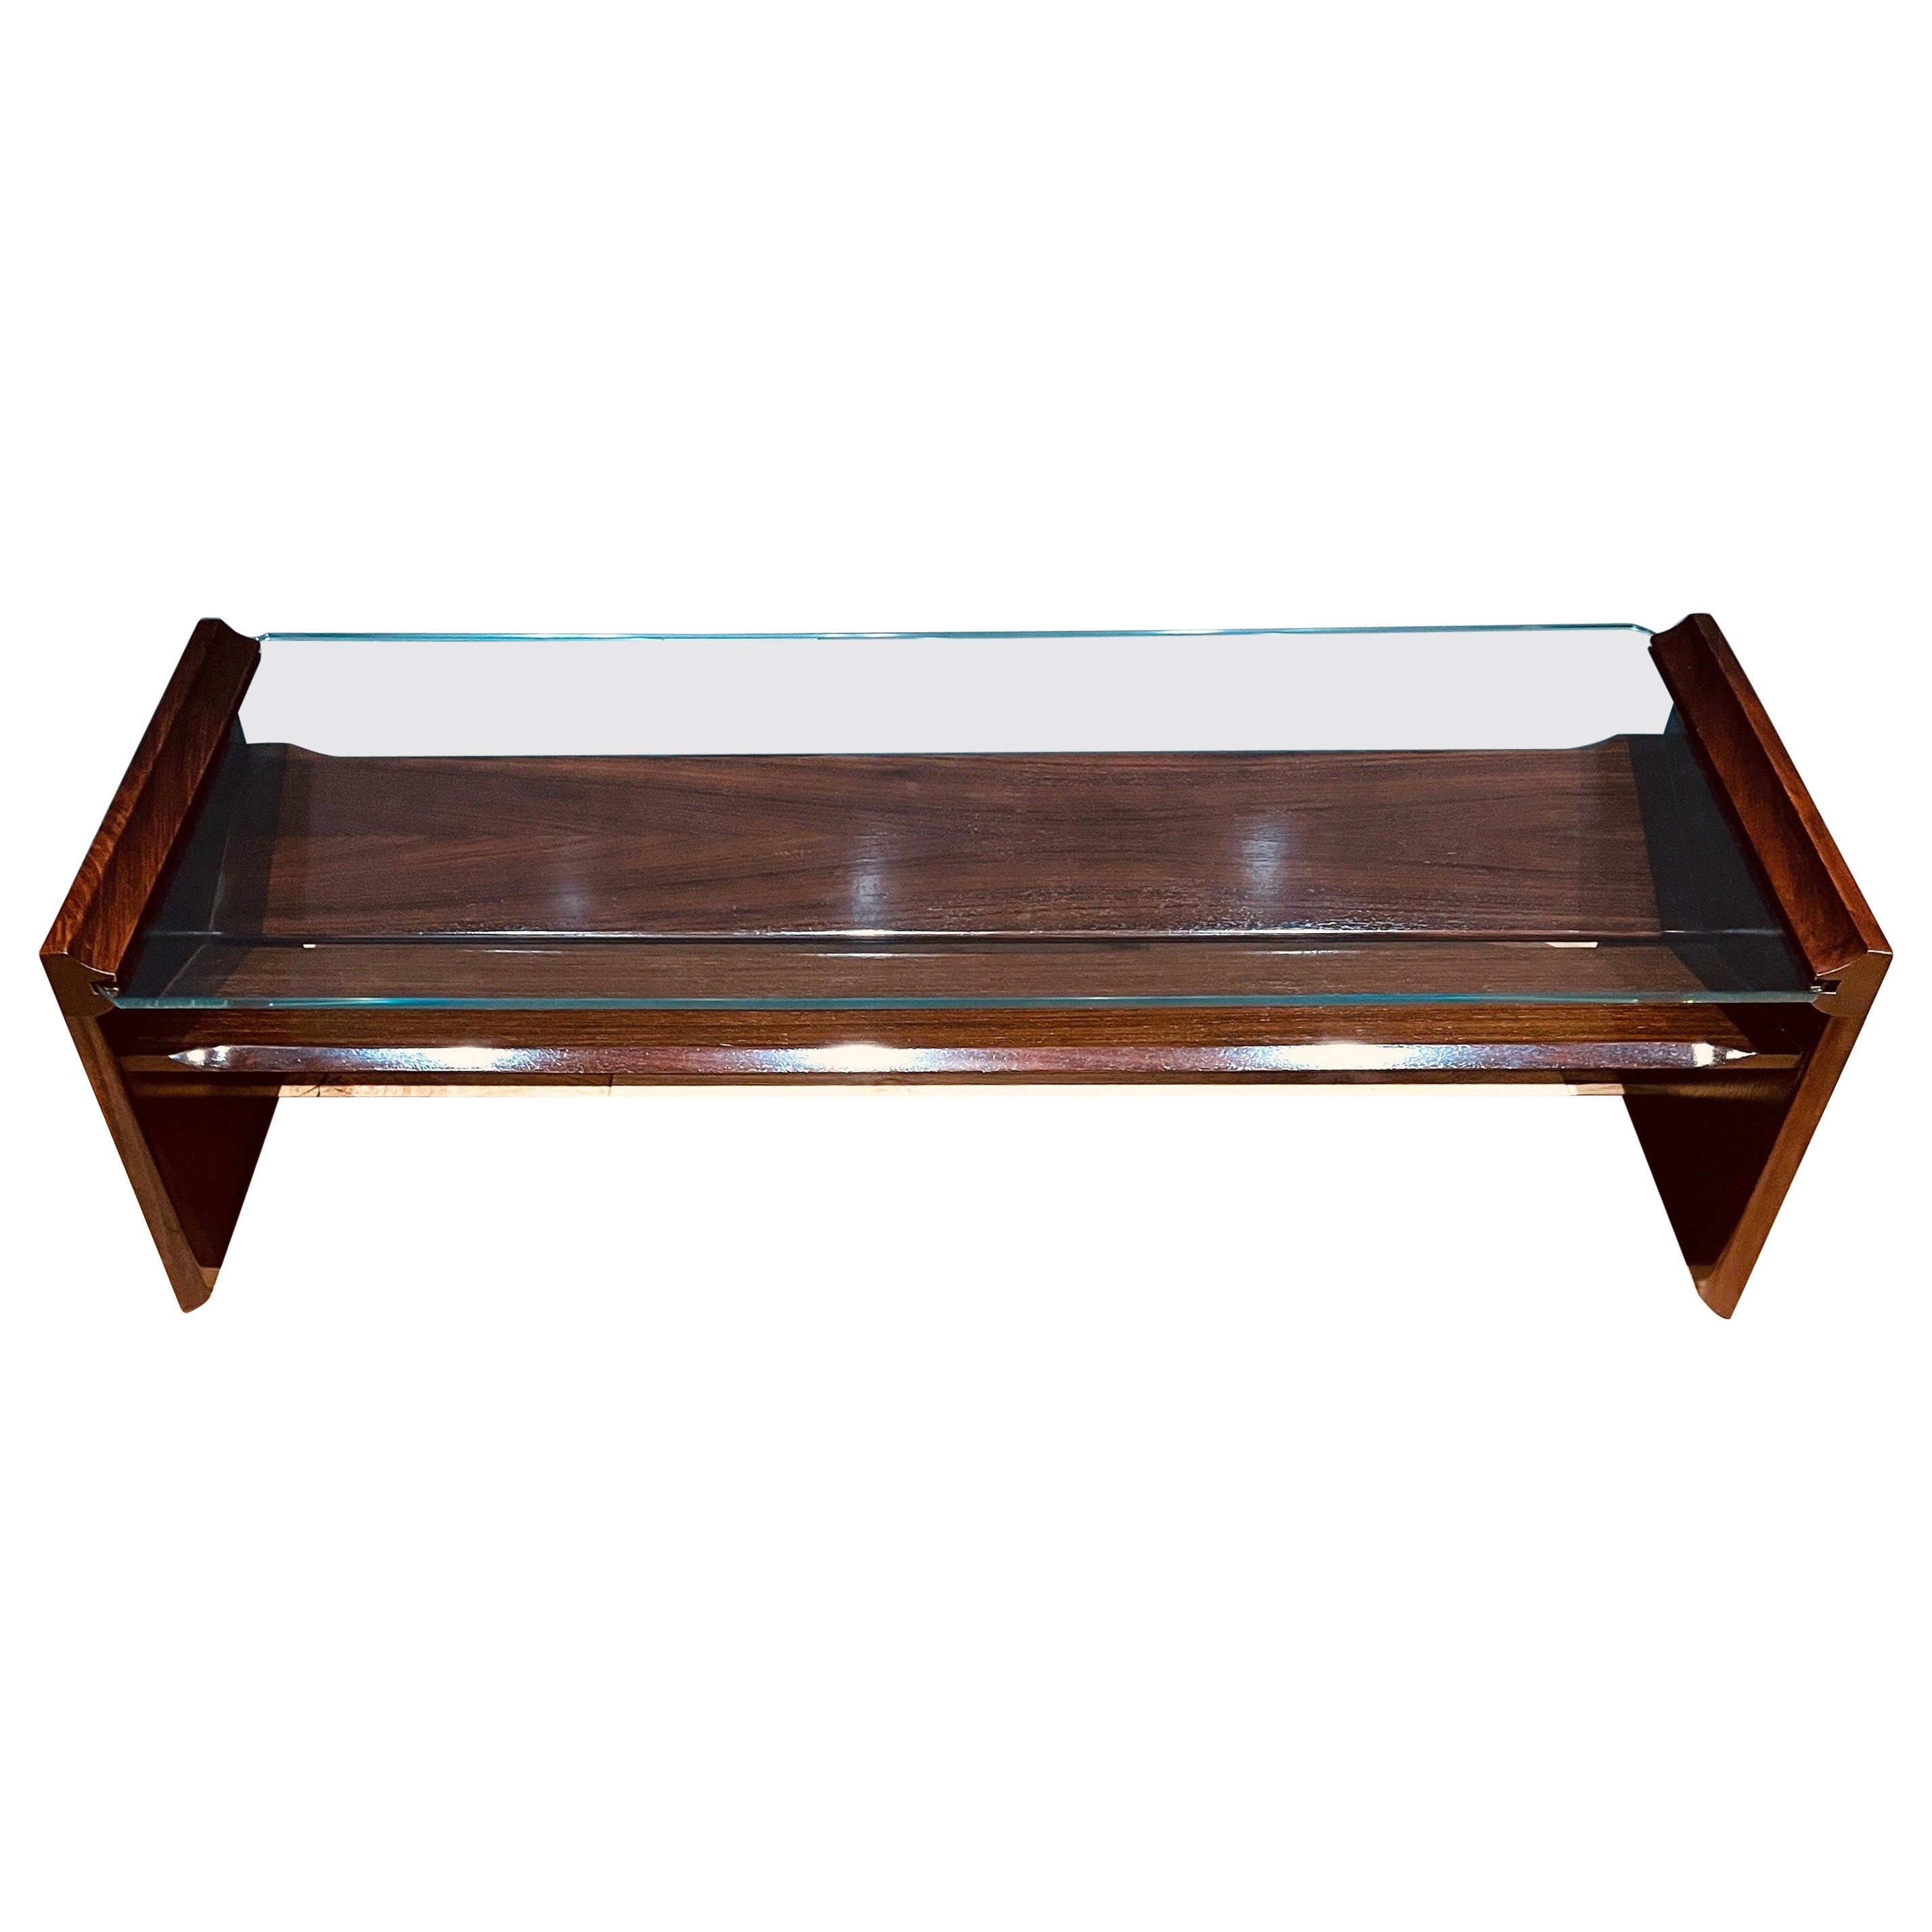 Table basse rectangulaire en verre et Wood avec porte-revues 